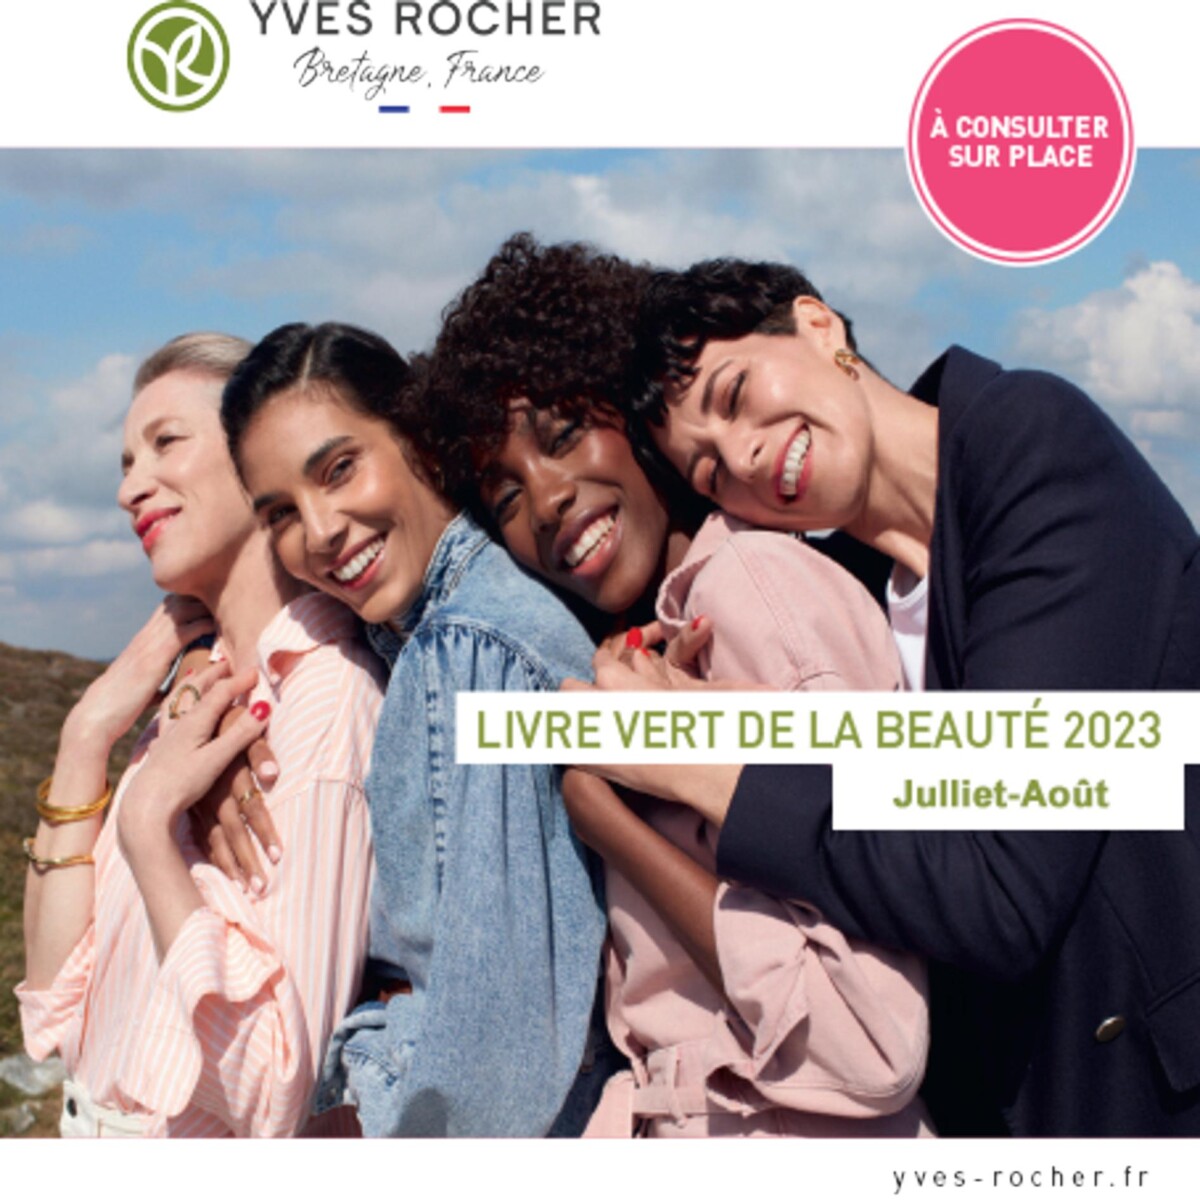 Catalogue Livre vert de la beaute 2023, page 00001